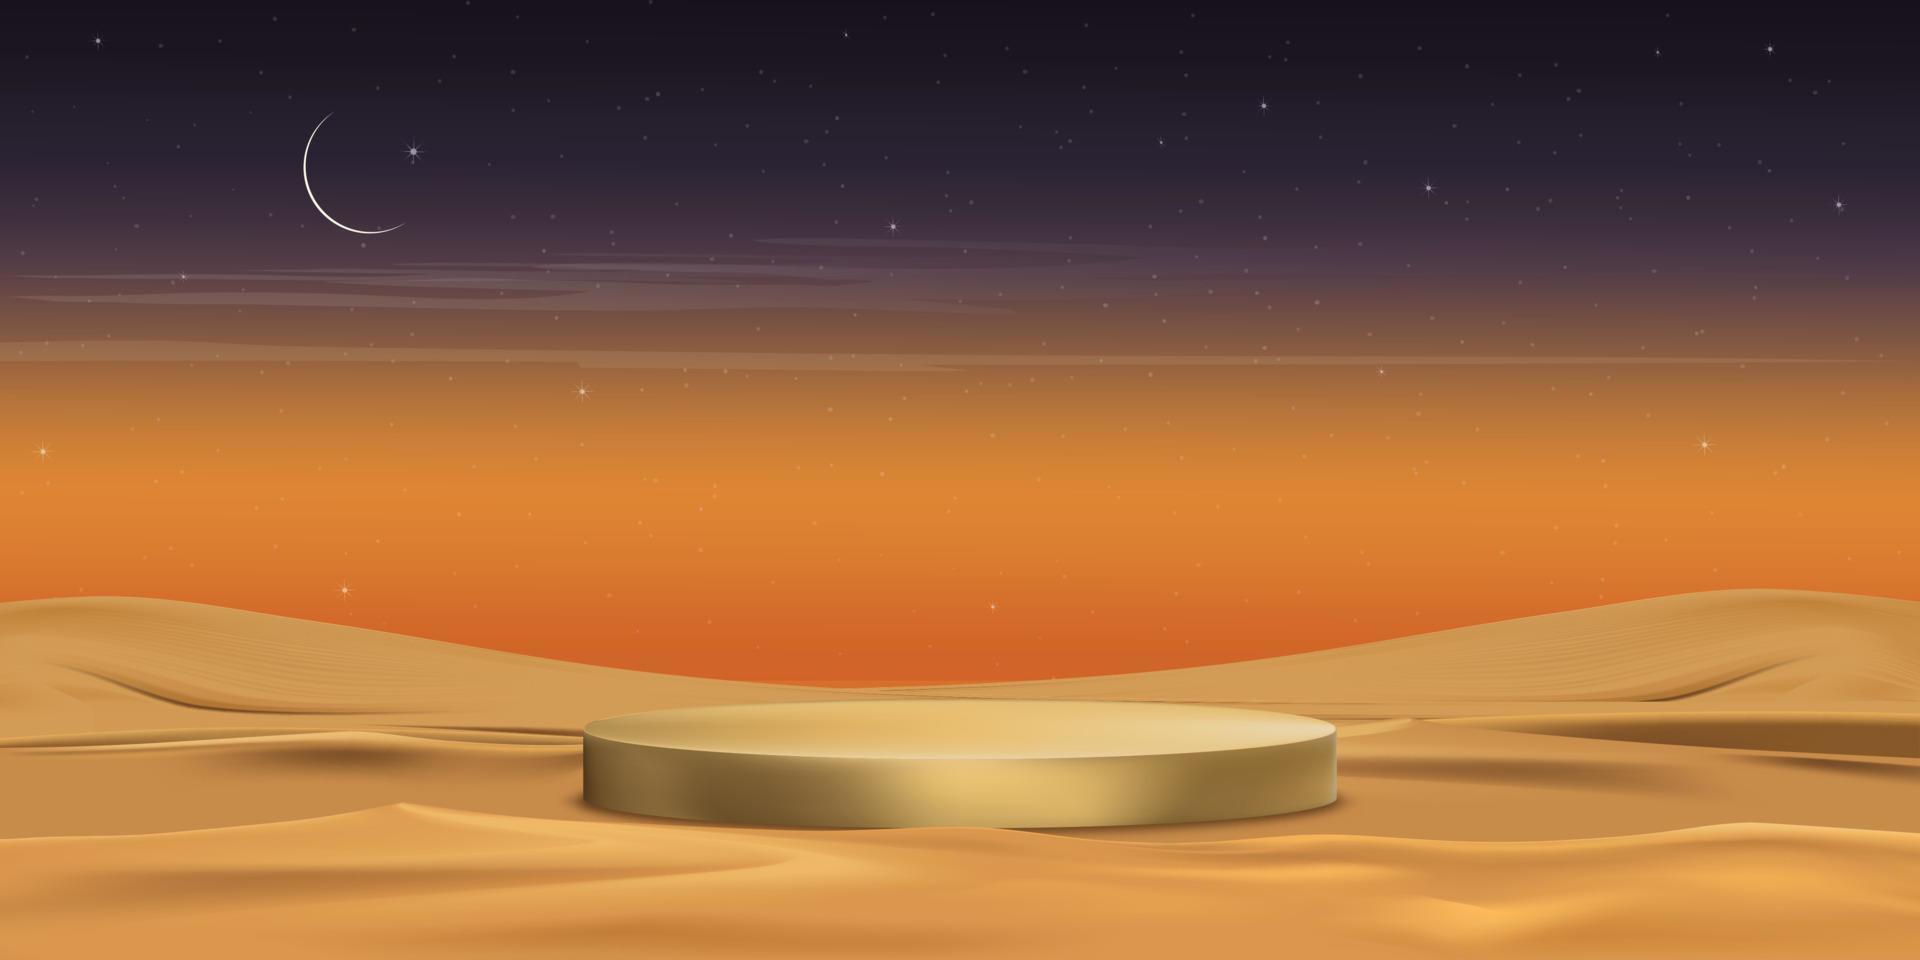 pódio 3d islâmico com paisagem desértica com dunas de areia, lua crescente, estrela no fundo do céu pôr do sol laranja, banner islâmico para apresentação do produto, ramadan, eid al adha, eid mubarak, eid el kabir vetor